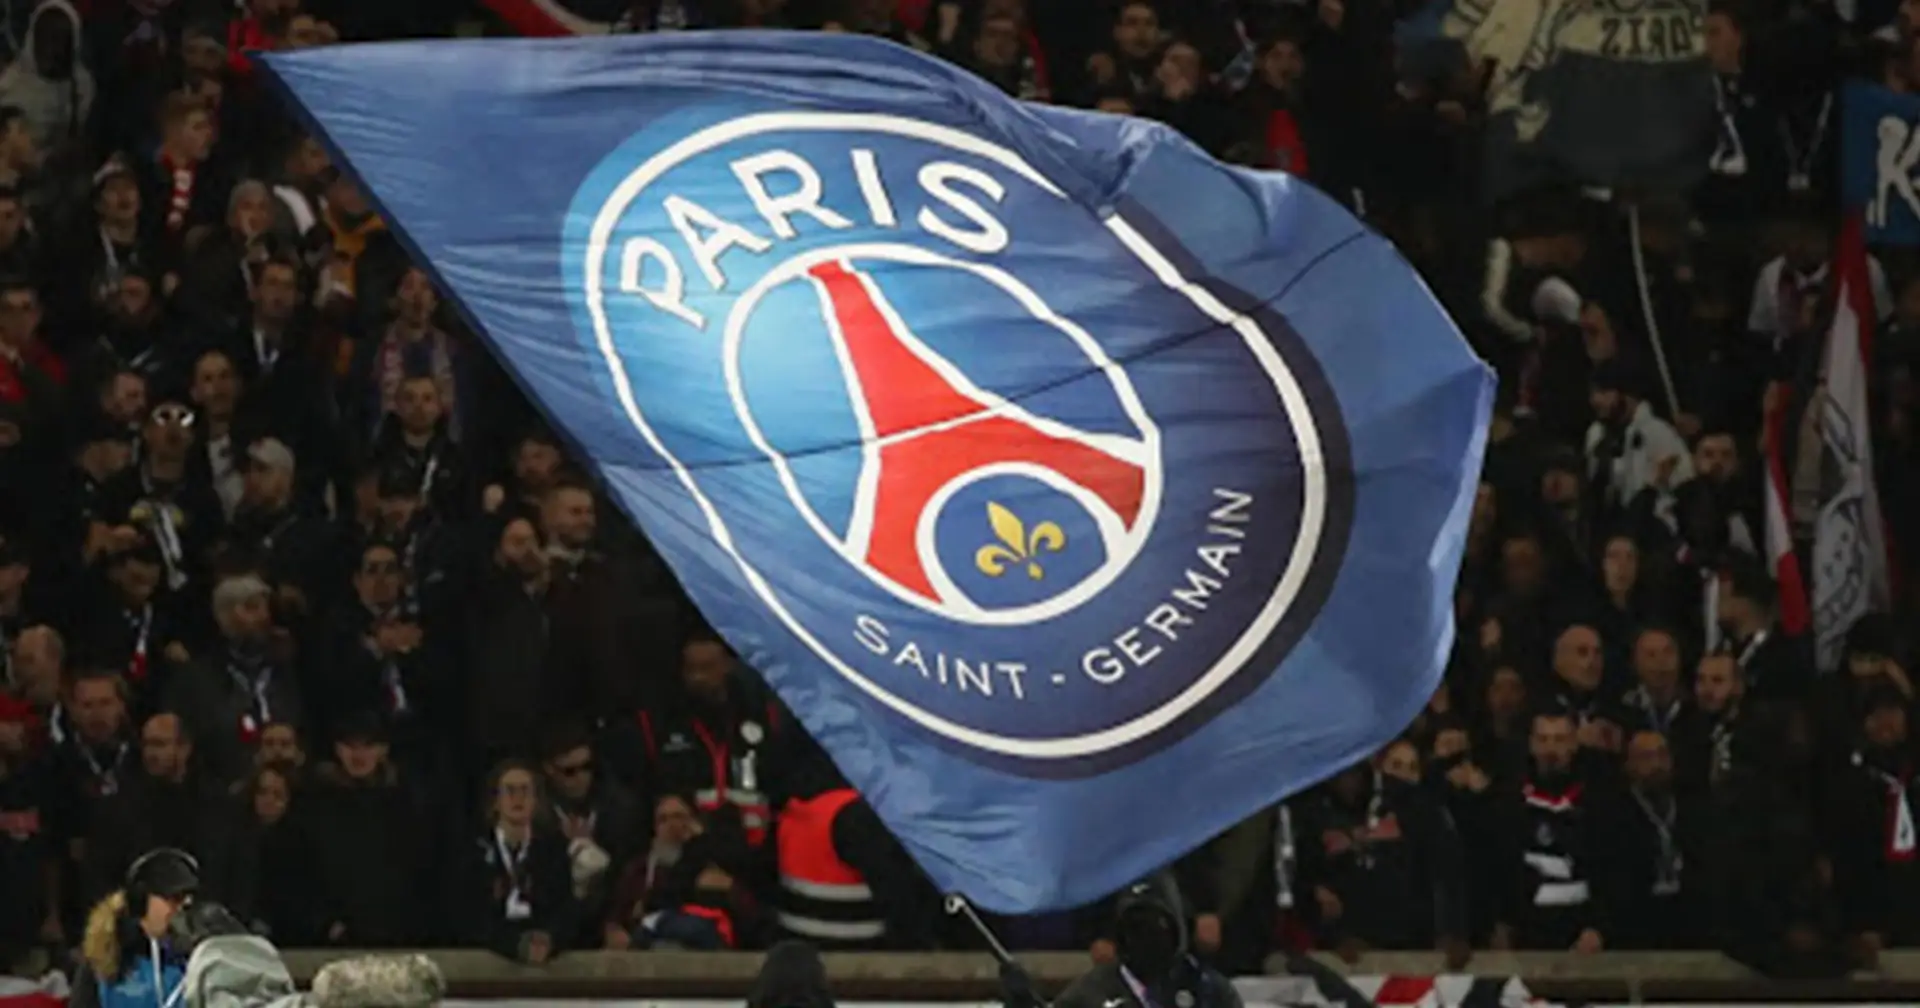 ⚔️ Souhaiteriez vous un autre top club à Paris pour avoir une vraie rivalité et un vrai derby?